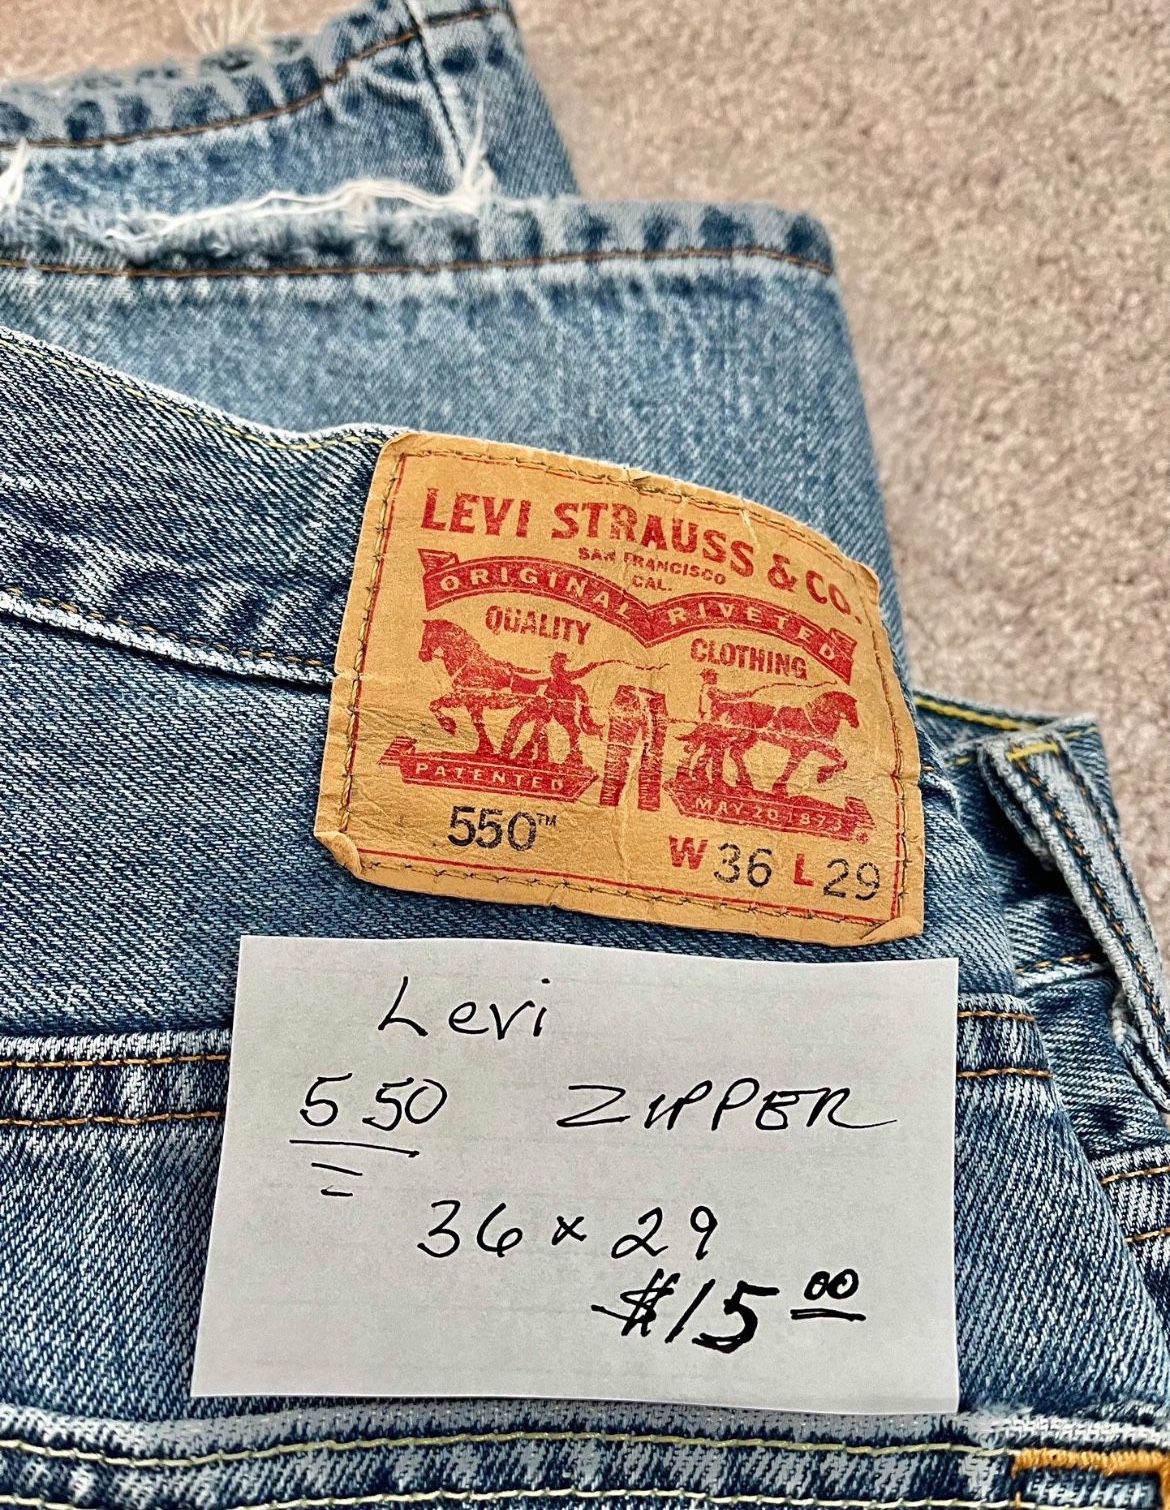  Levi 550 Jeans,  sizes 36x29